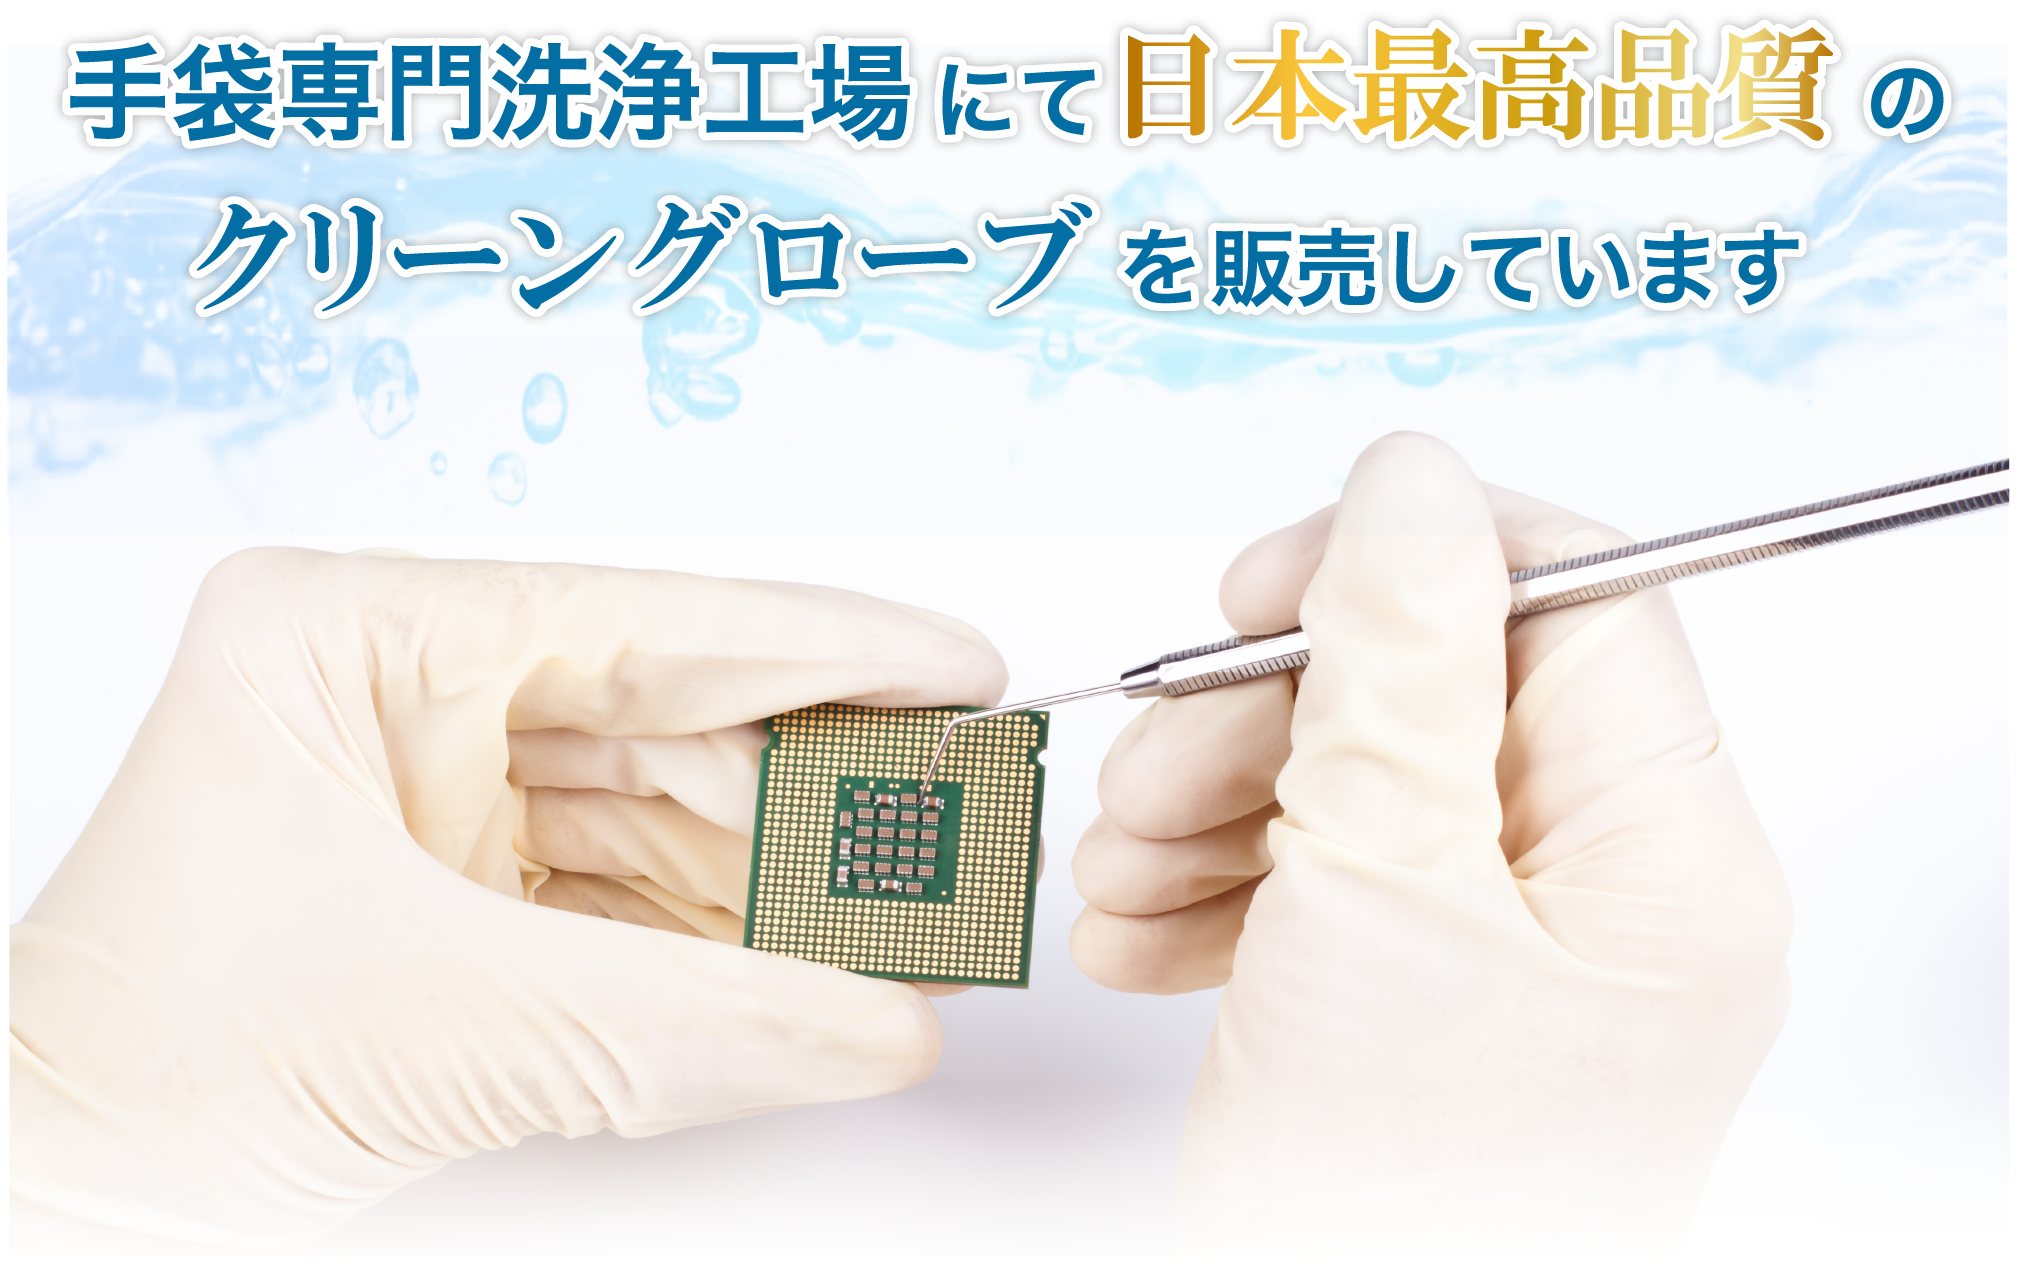 手袋専門洗浄工場にて日本最高品質のクリーングローブを販売しています